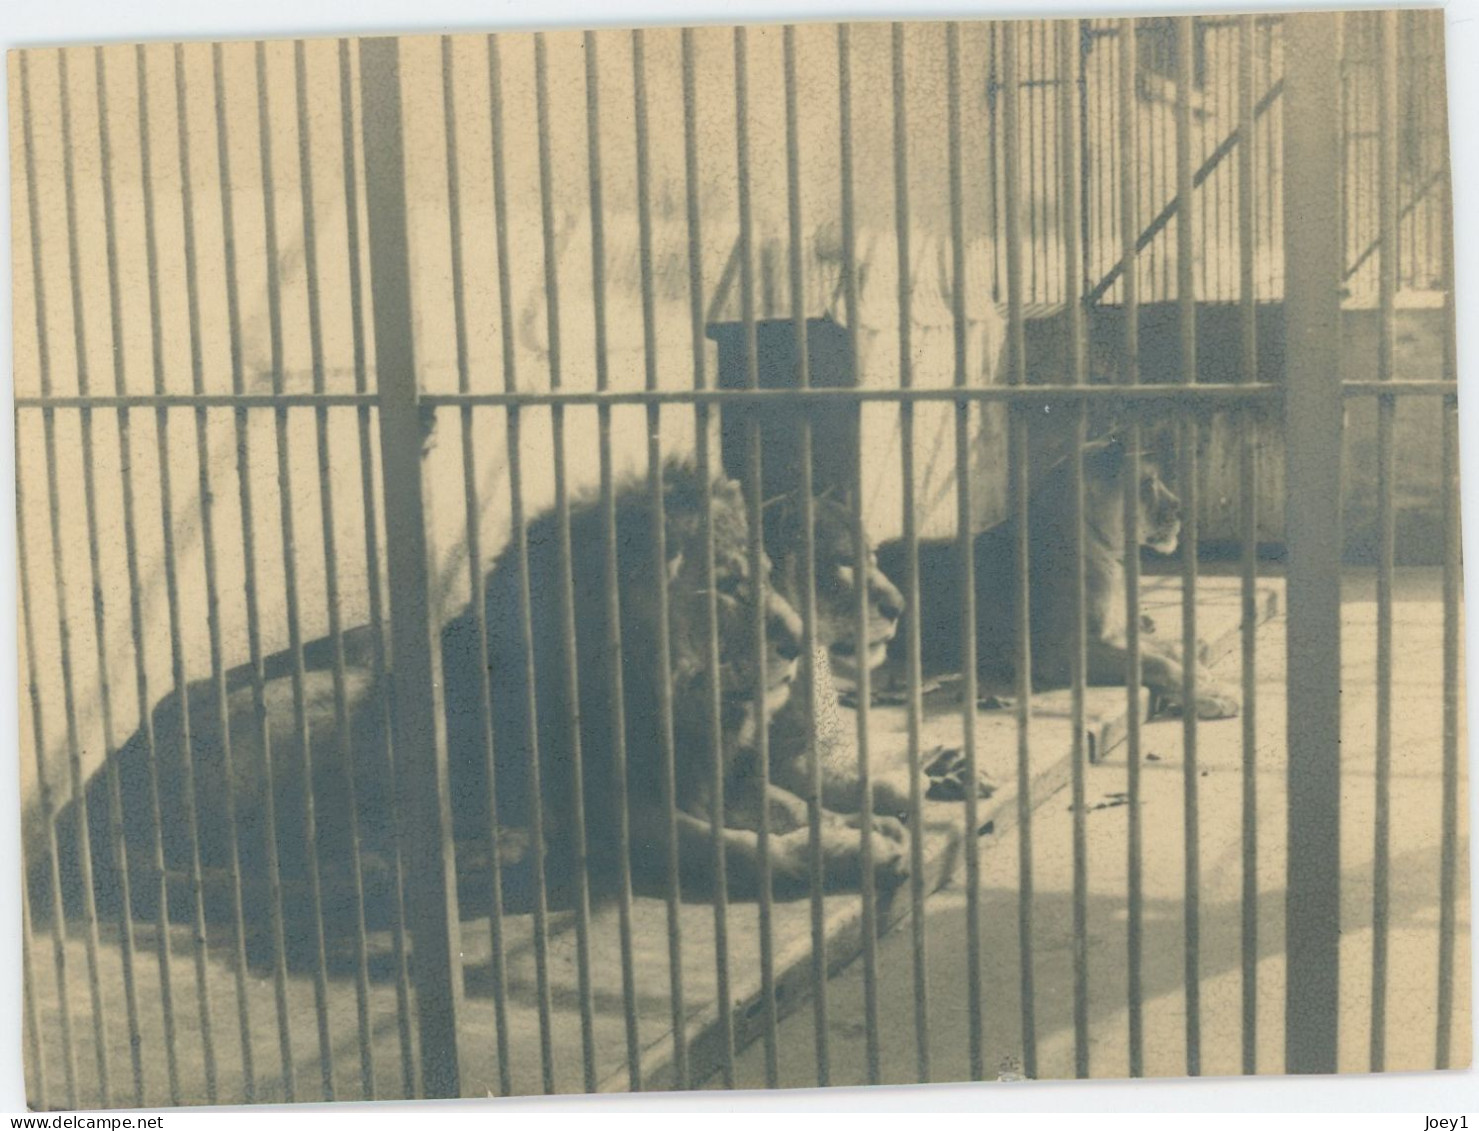 8 petites photos d animaux en cage au zoo, années 30